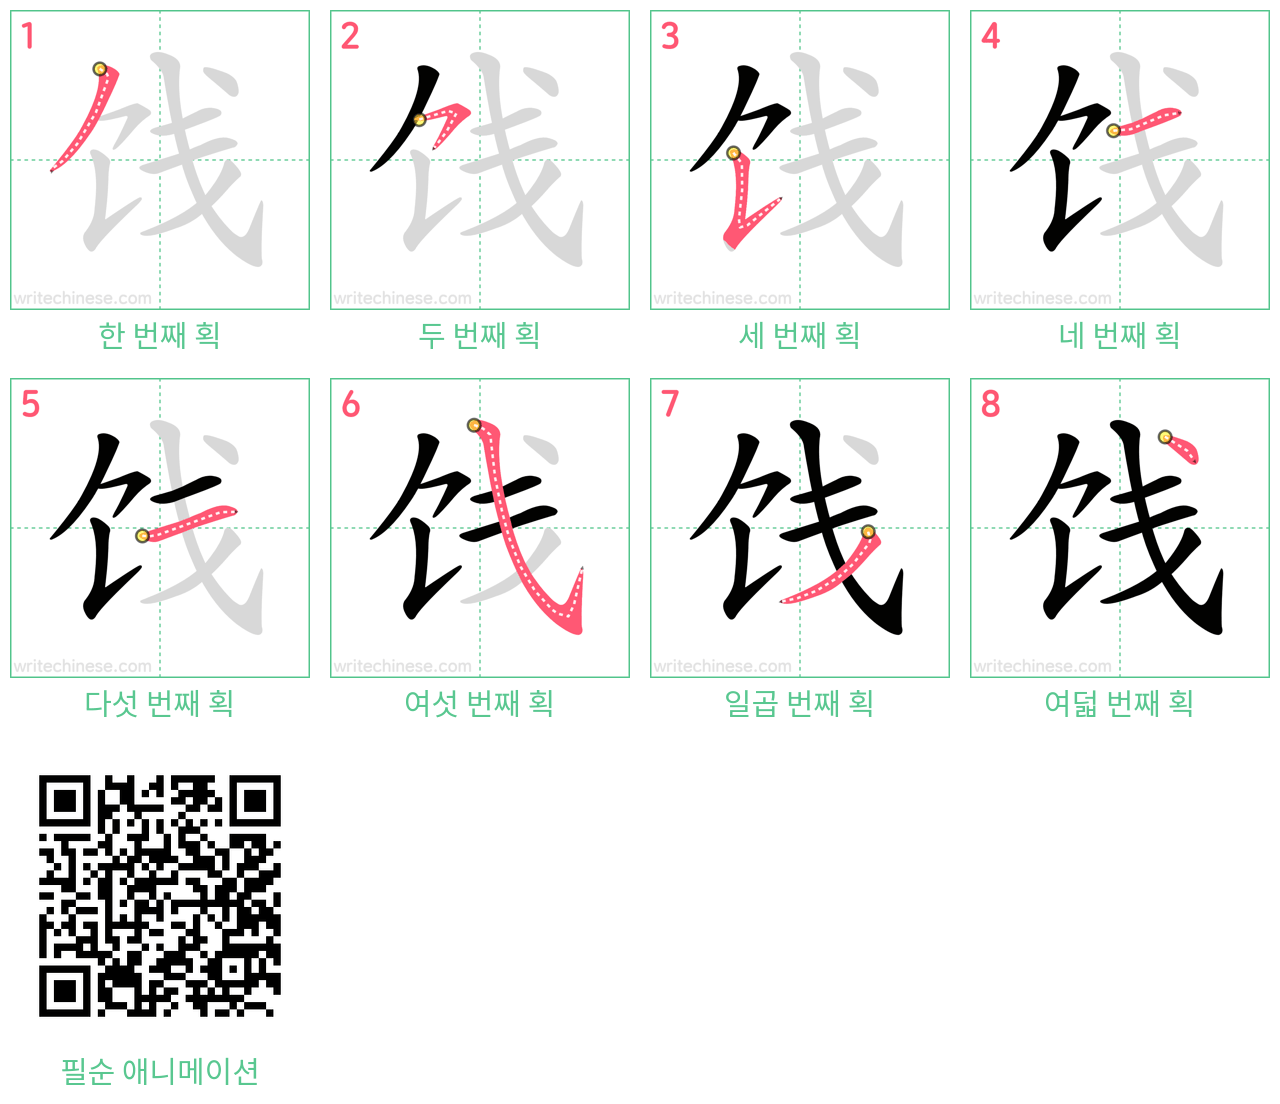 饯 step-by-step stroke order diagrams